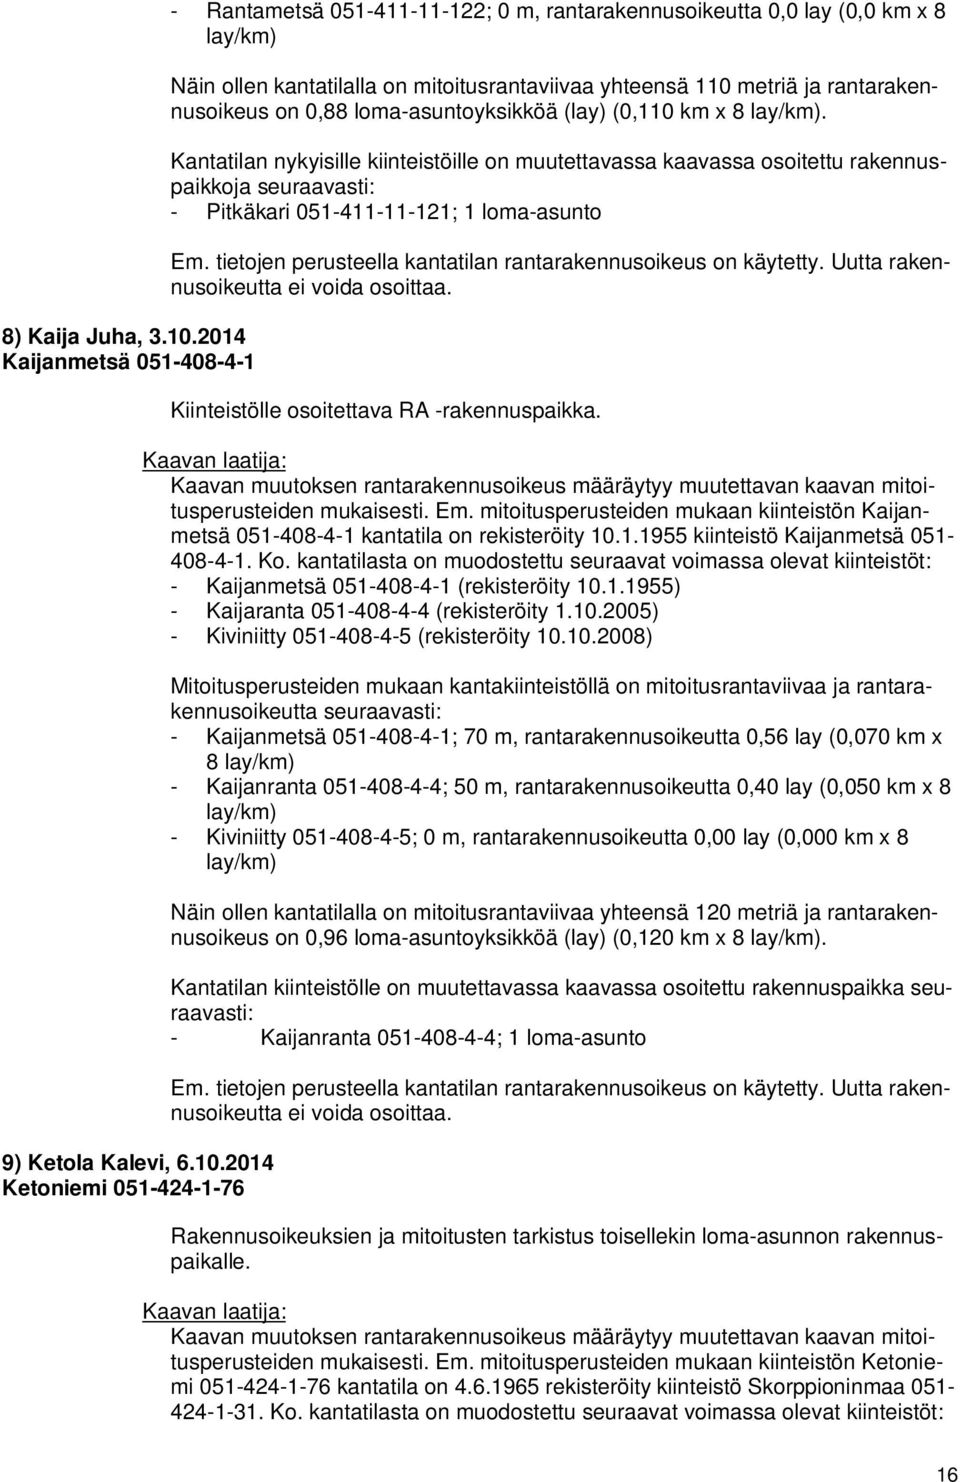 2014 Ketoniemi 051-424-1-76 - Rantametsä 051-411-11-122; 0 m, rantarakennusoikeutta 0,0 lay (0,0 km x 8 lay/km) Näin ollen kantatilalla on mitoitusrantaviivaa yhteensä 110 metriä ja